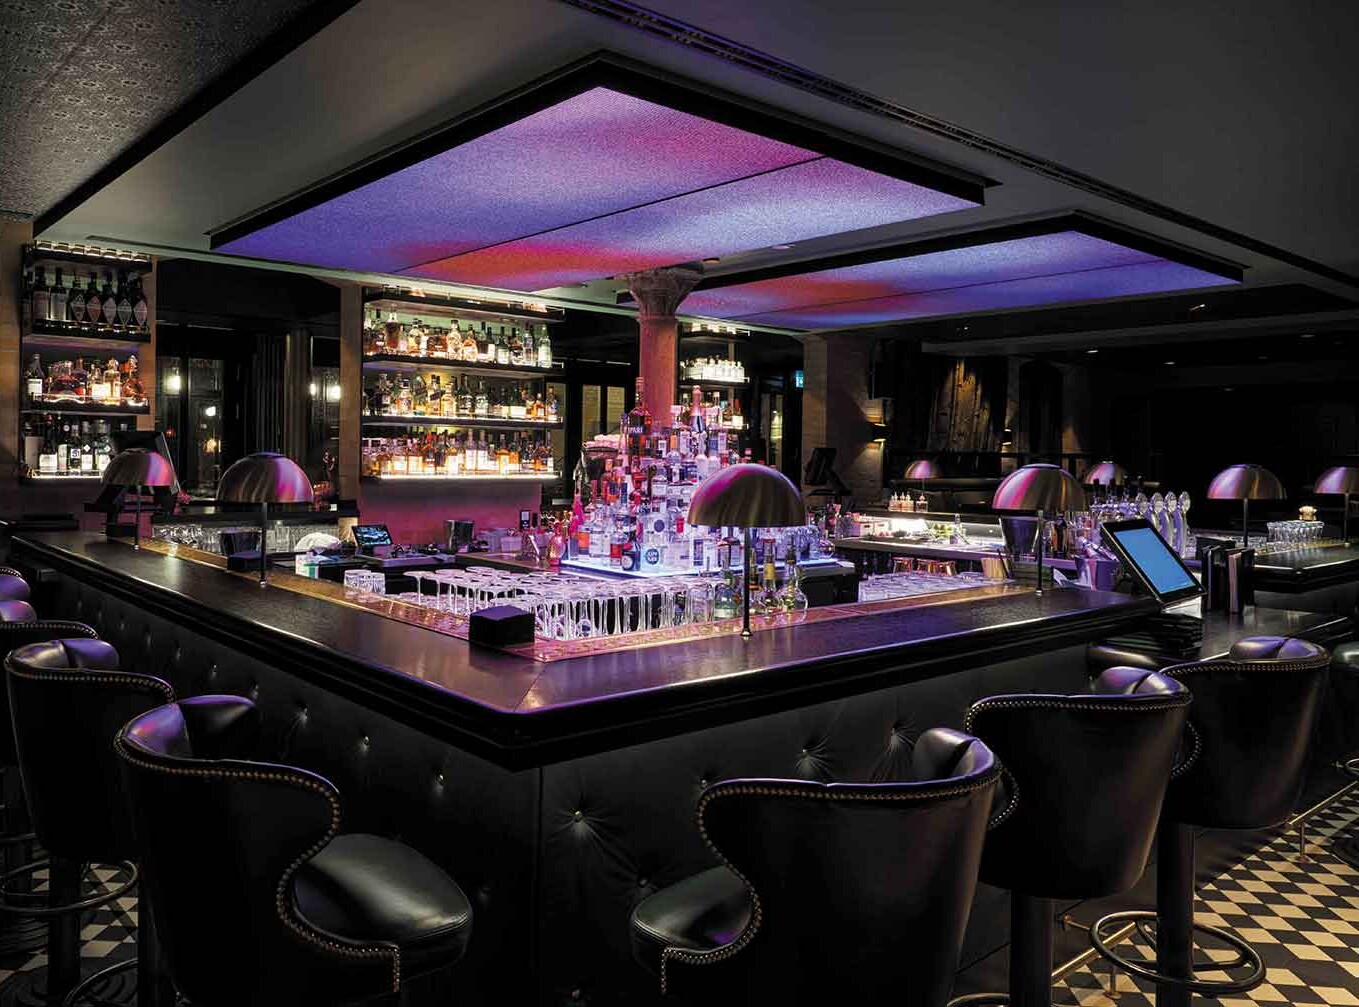 hotelbar hamburg. Mit der bar noir bietet das TORTUE Hamburg eine erstklassige Hotelbar in modernem Design, mit hochwertigem Mobiliar und besten Cocktails.